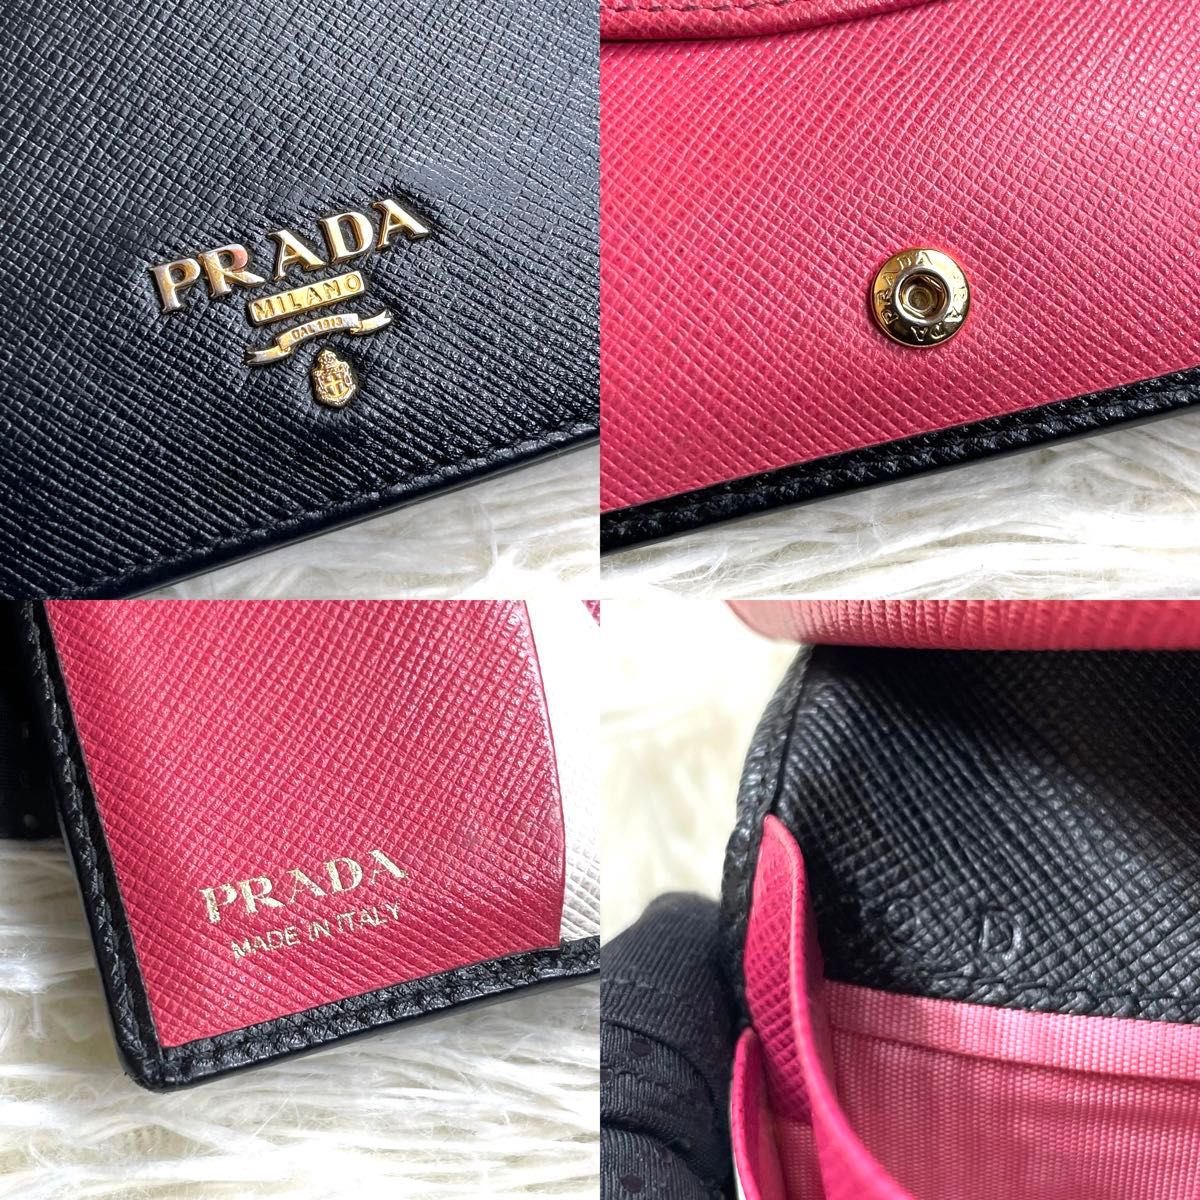 人気品 / PRADA プラダ サフィアーノバイカラーコンパクトウォレット 二つ折り財布 コンパクト財布 レザー ブラック ピンク